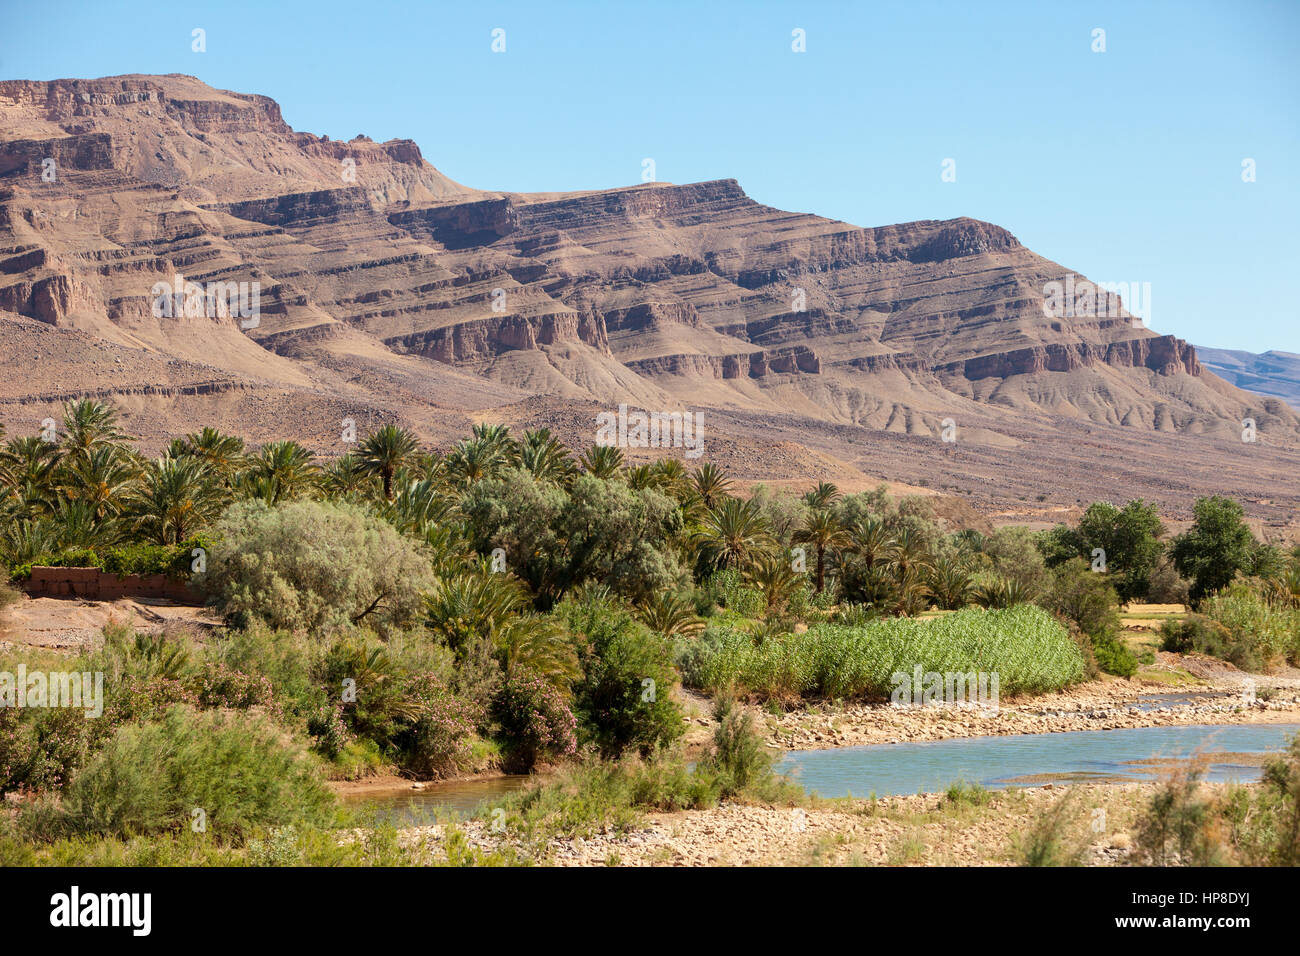 Escena del valle del río Draa, Marruecos, cerca de Zagora. Foto de stock